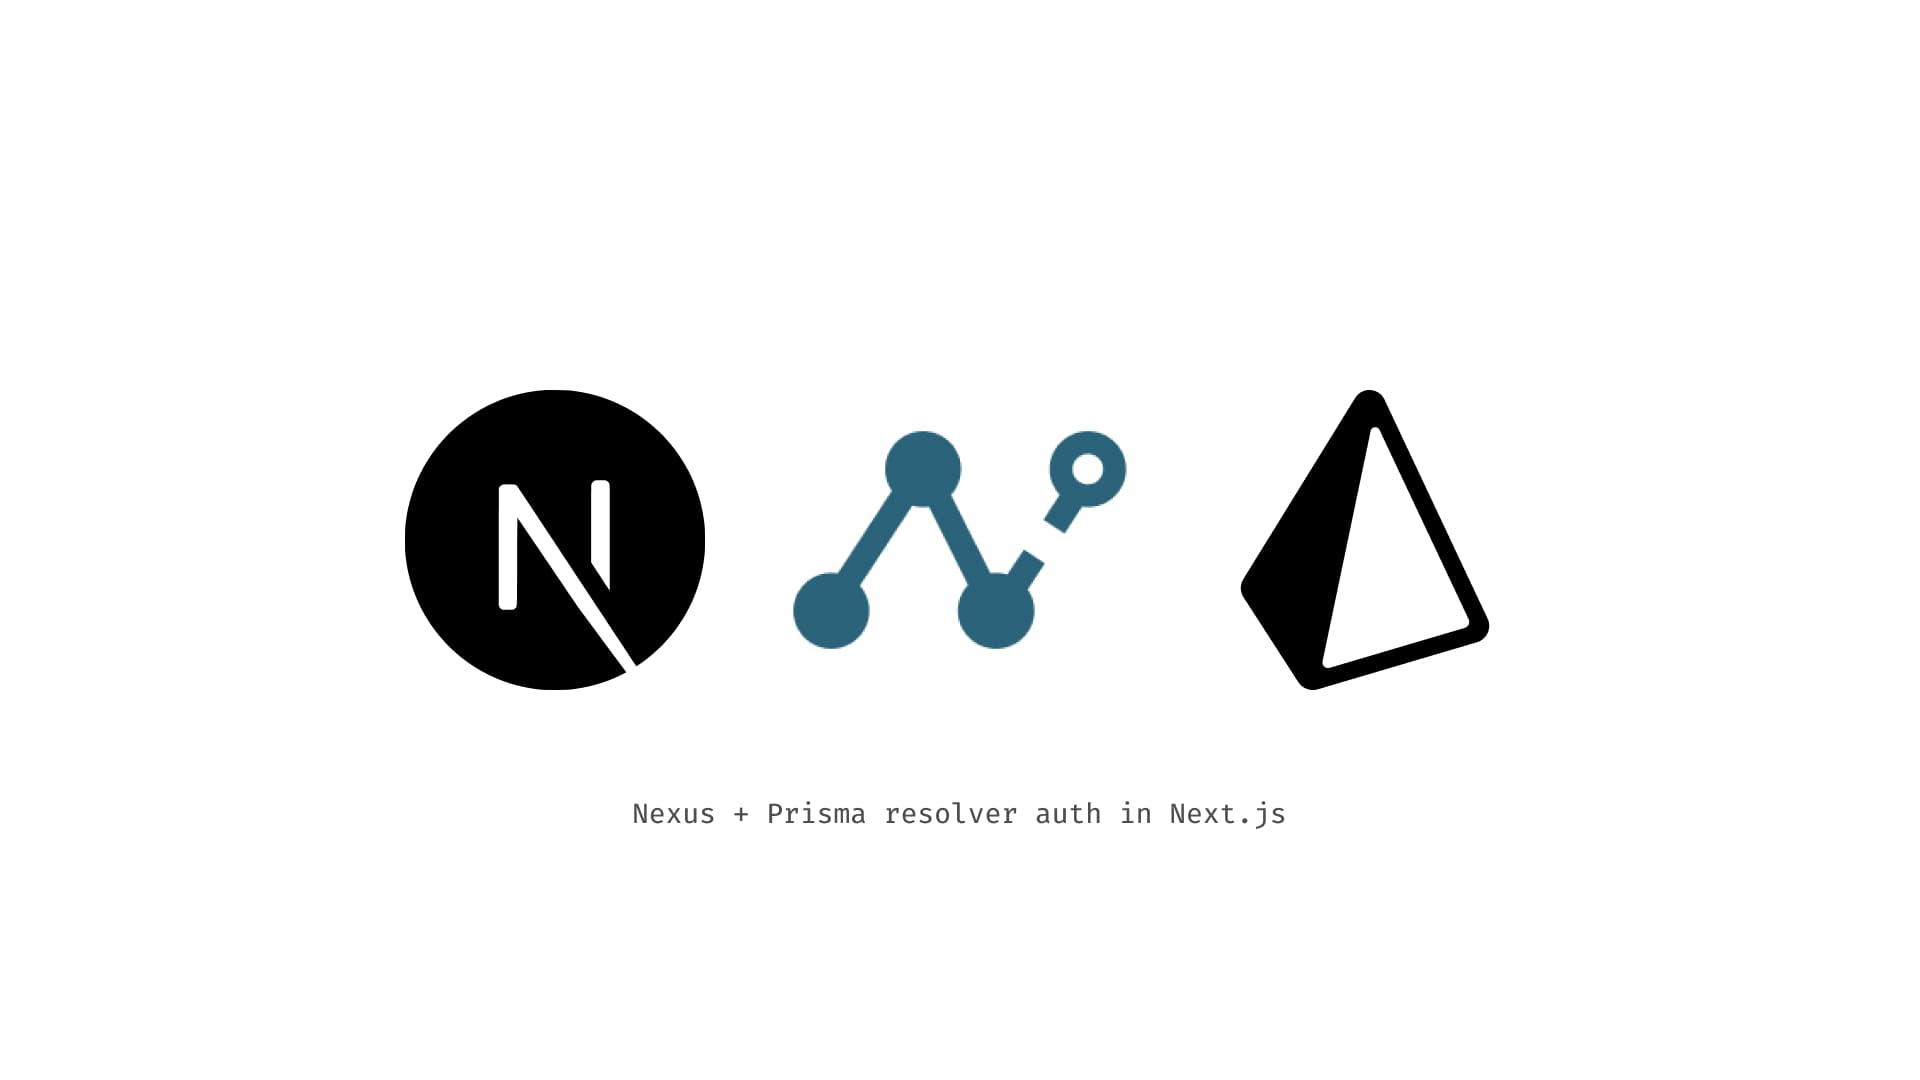 Nexus + Prisma resolver auth in Next.js